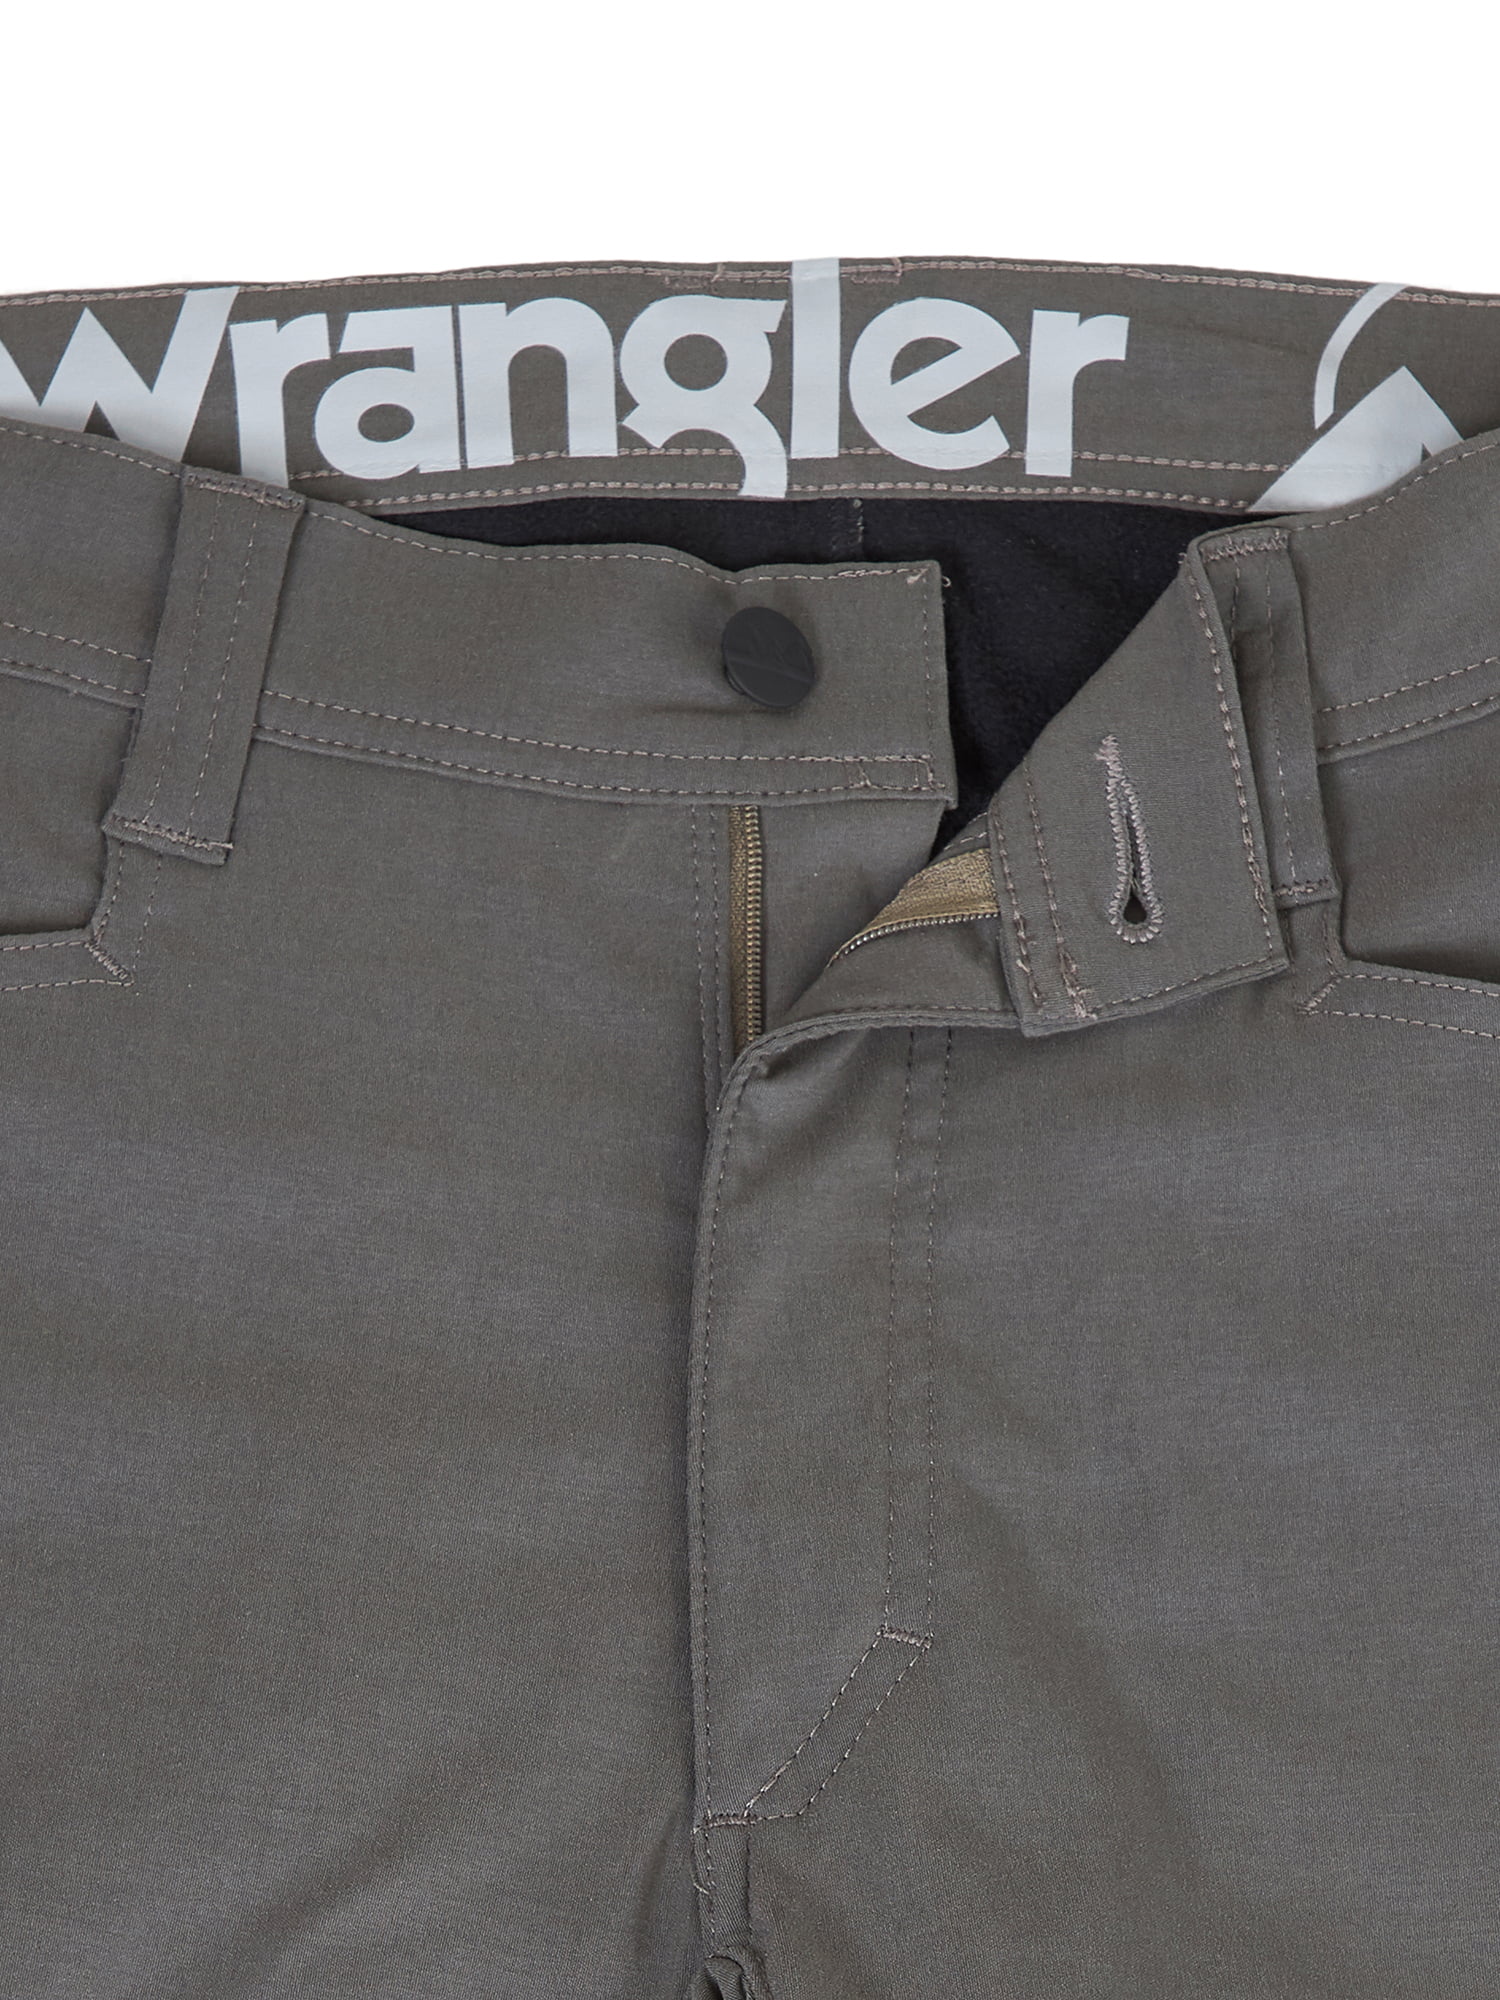 wrangler outdoor fleece lined pants